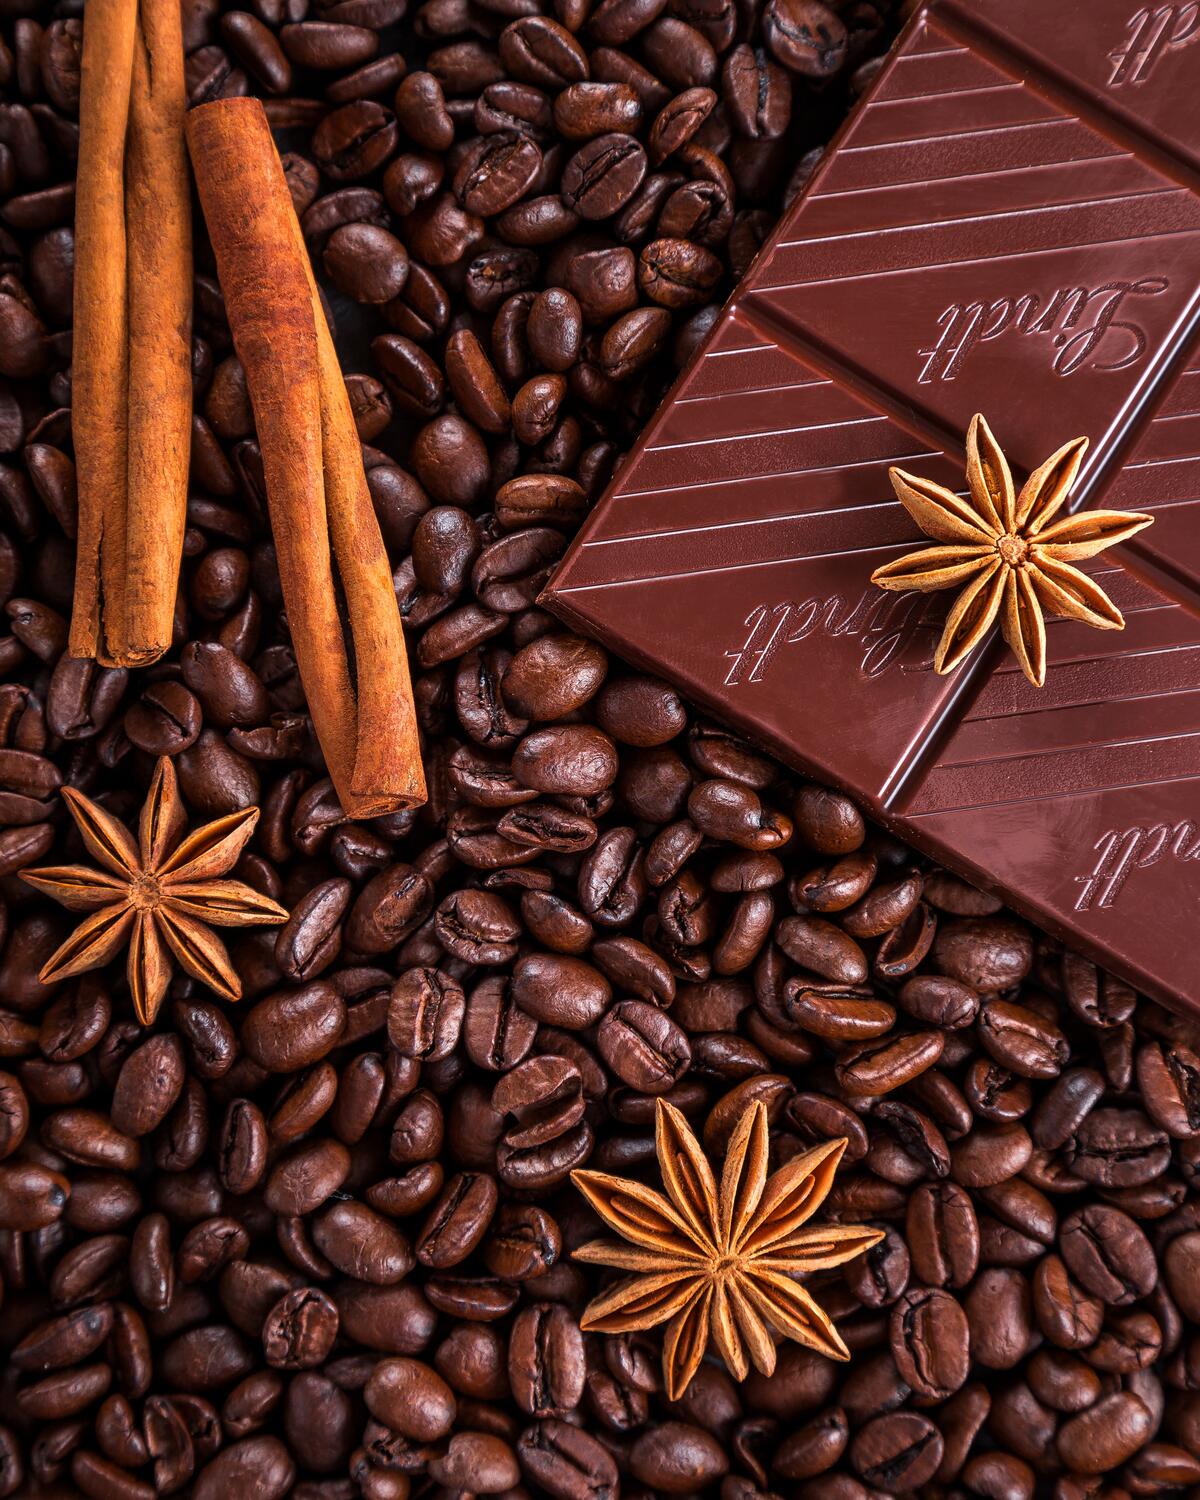 Картинка с кофейными зернами и черным шоколадом